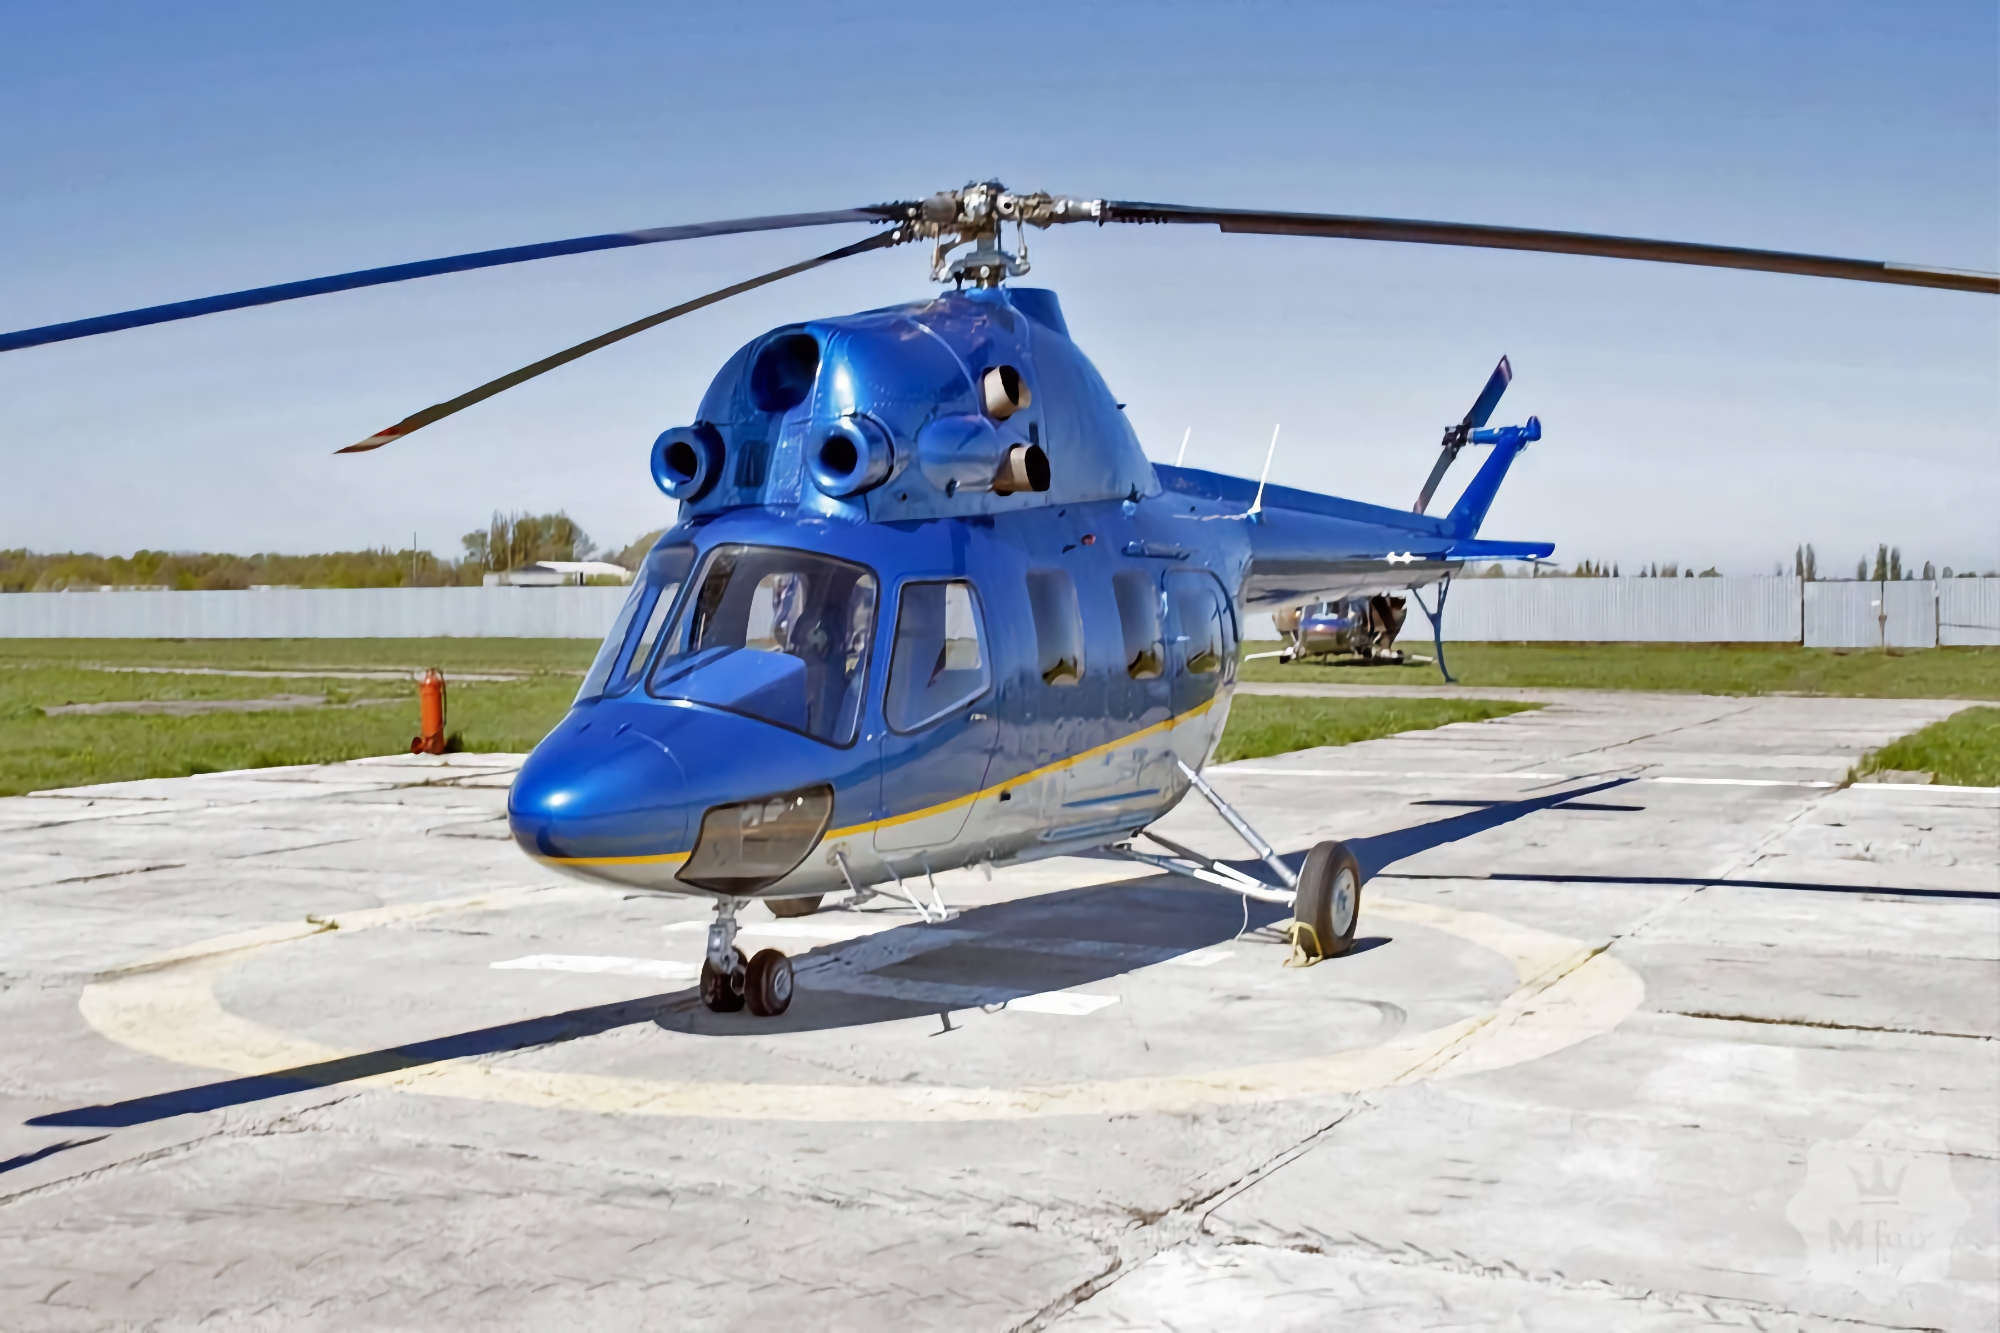 La Fondazione UNITED24 ha acquistato un elicottero di evacuazione Mi-2 AM-1 per l'esercito ucraino, costa $ 640.000